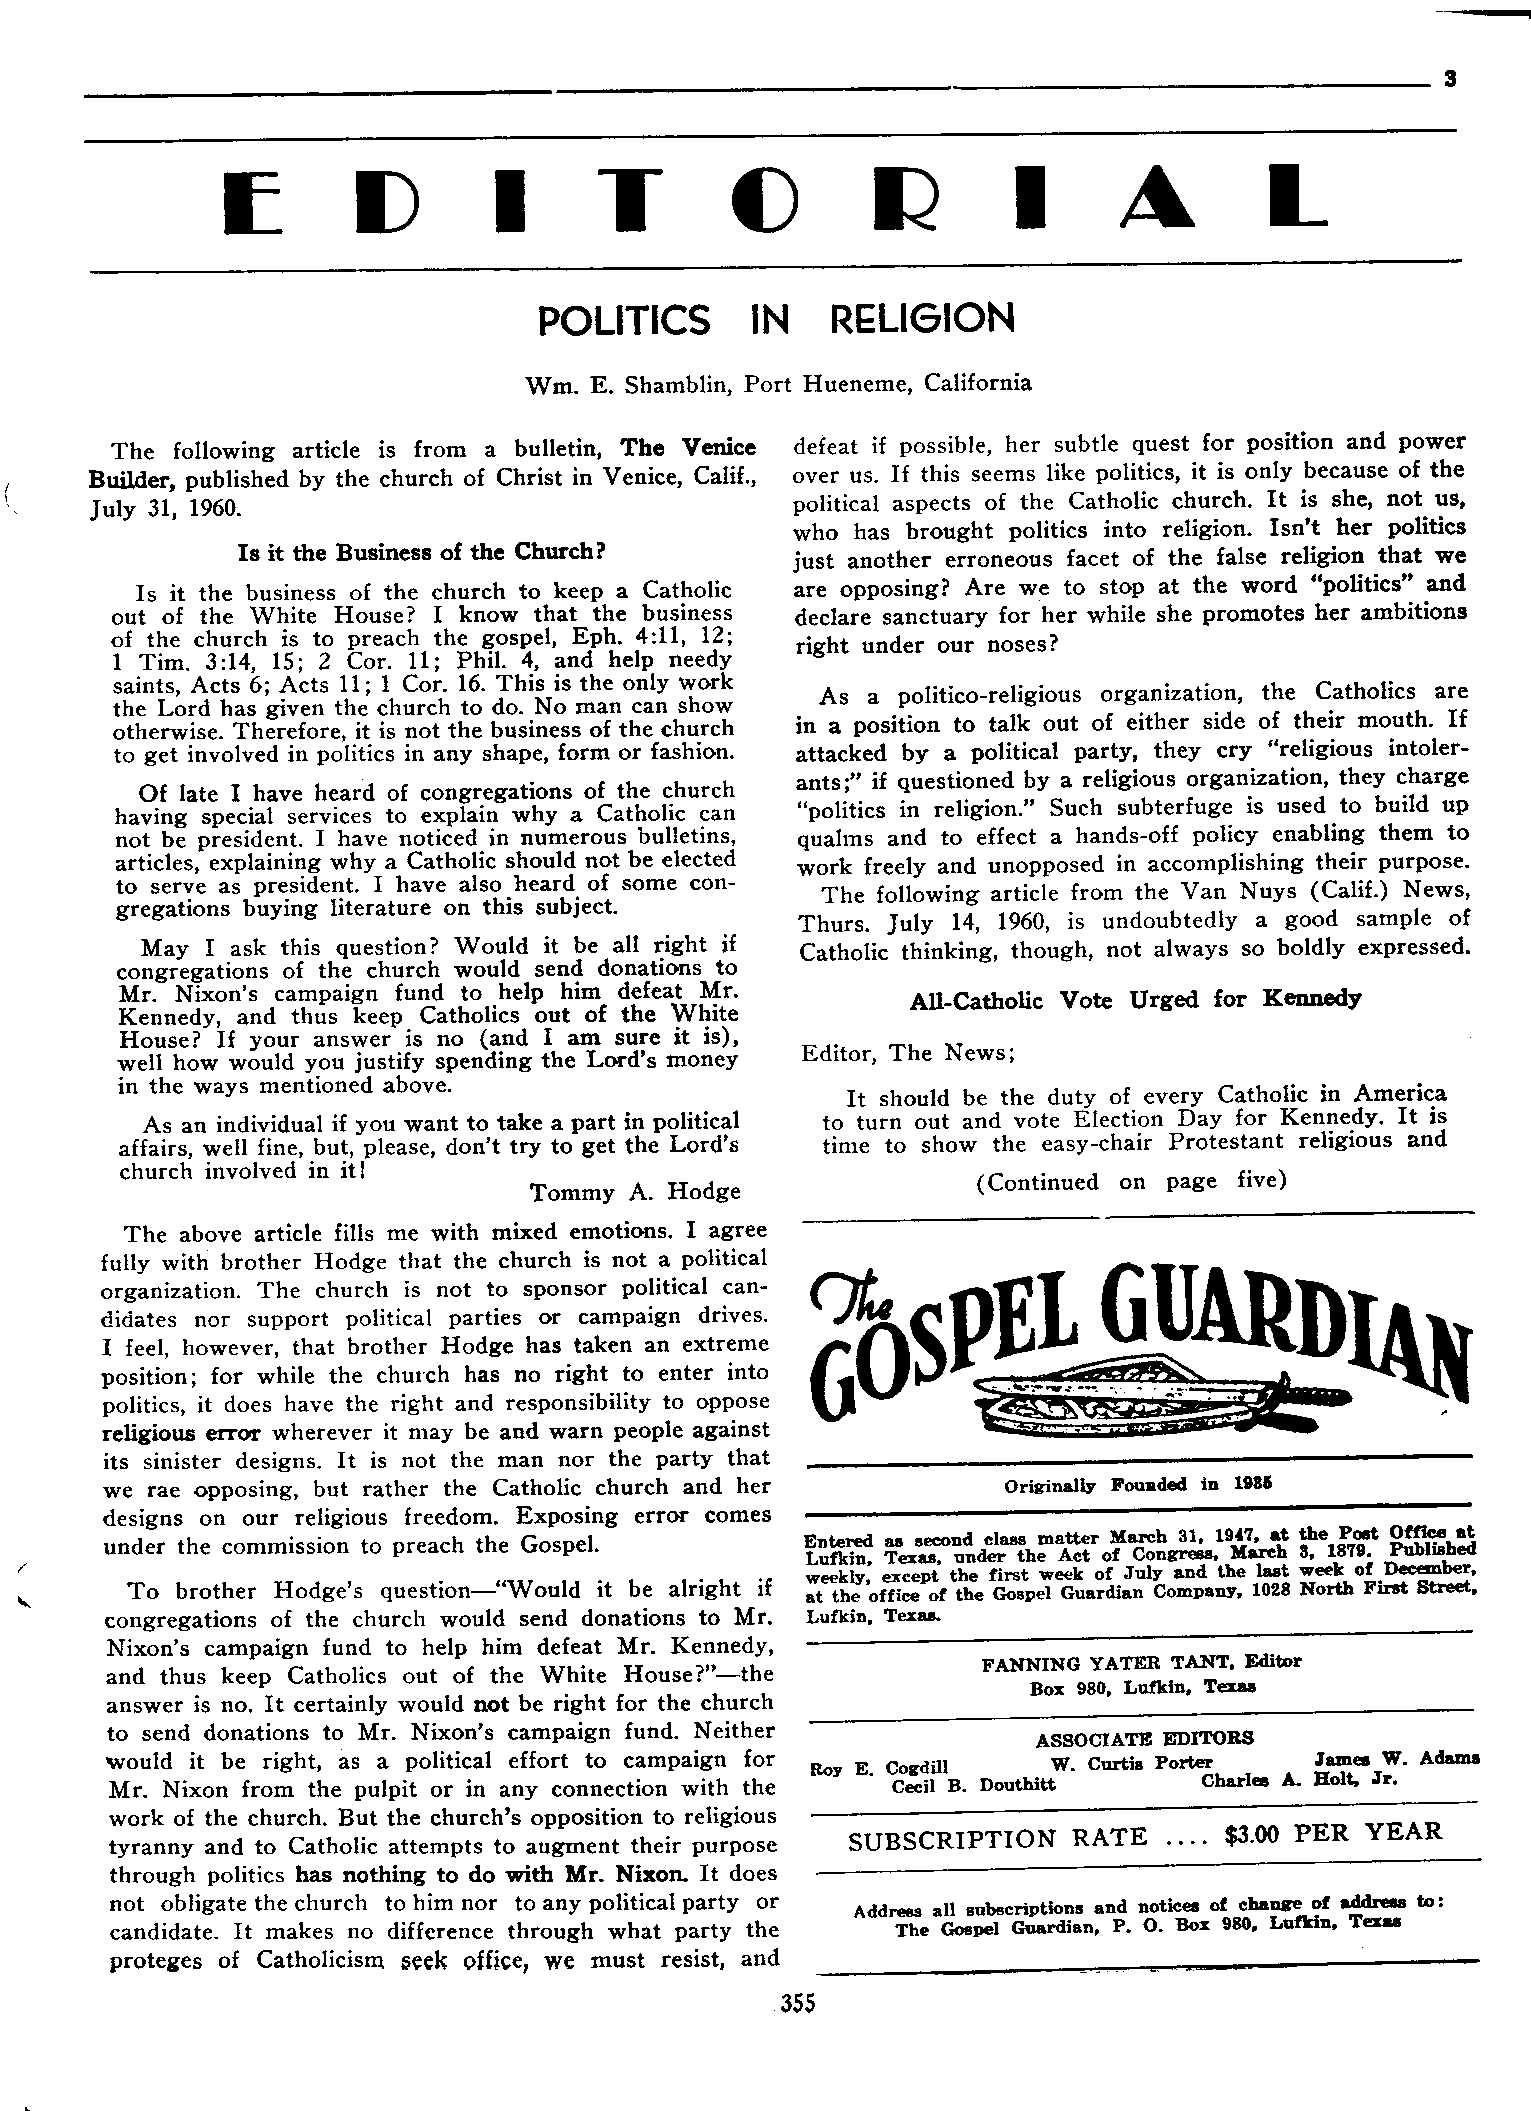 Gospel Guardian Original: Vol.12 No.23 Pg.3